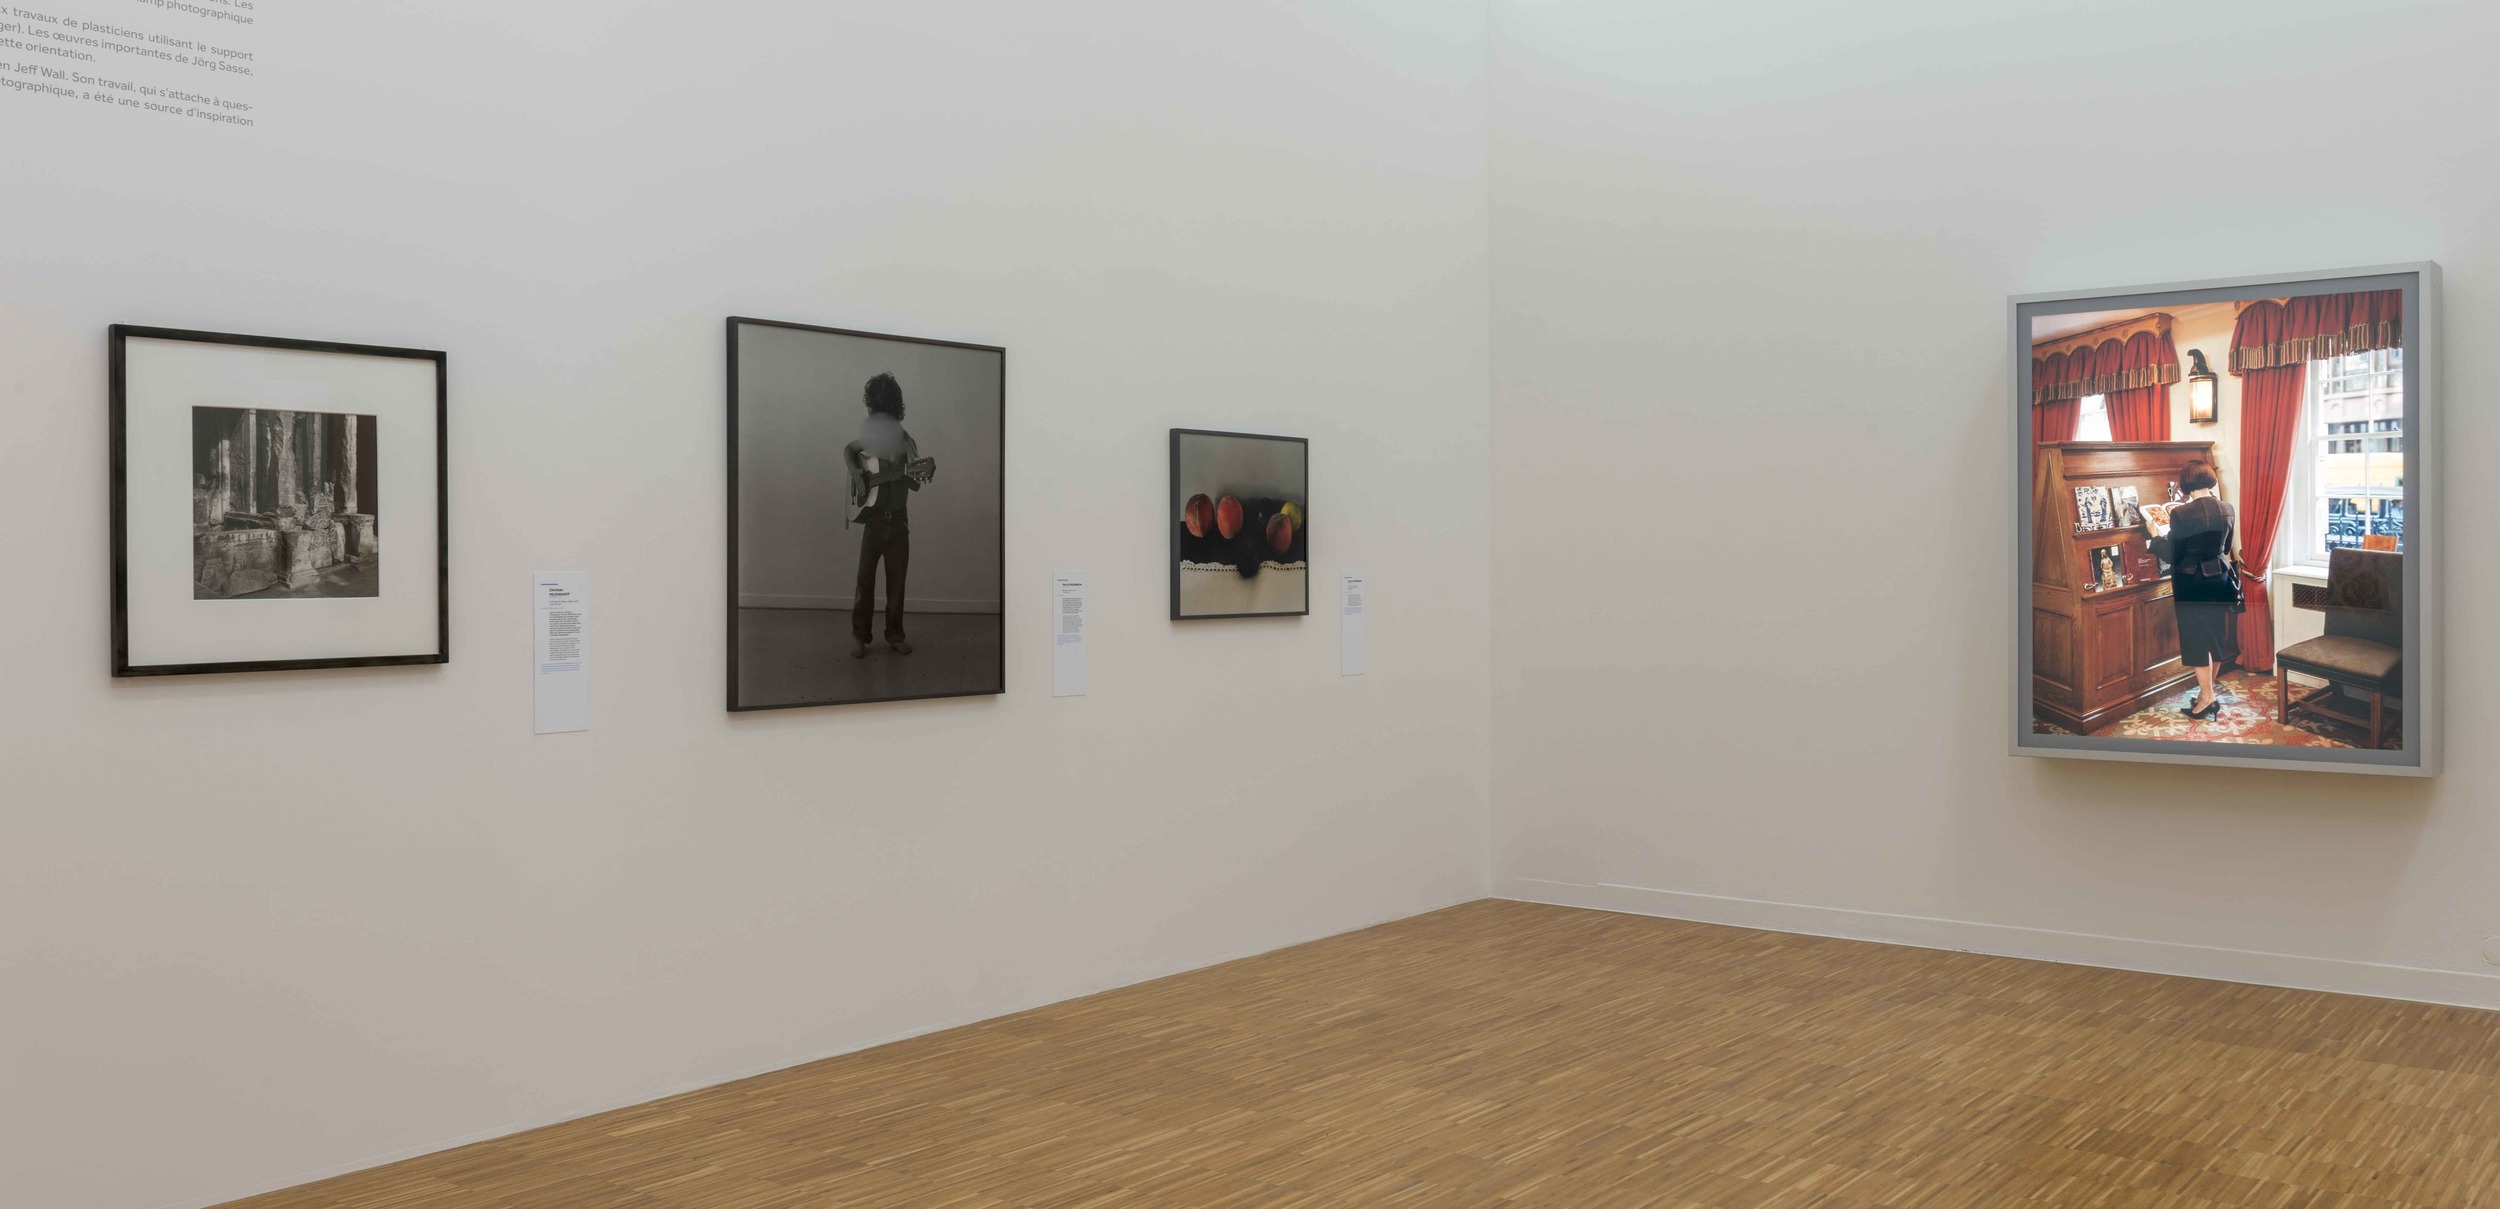   De Picasso à Warhol , Une Décennie d'Acquisitions, Musée de Grenoble (FR)&nbsp;2015. Curator Guy Tosatto.&nbsp;&nbsp;Artists in view: Patrick Faigenbaum, Jeff Wall 